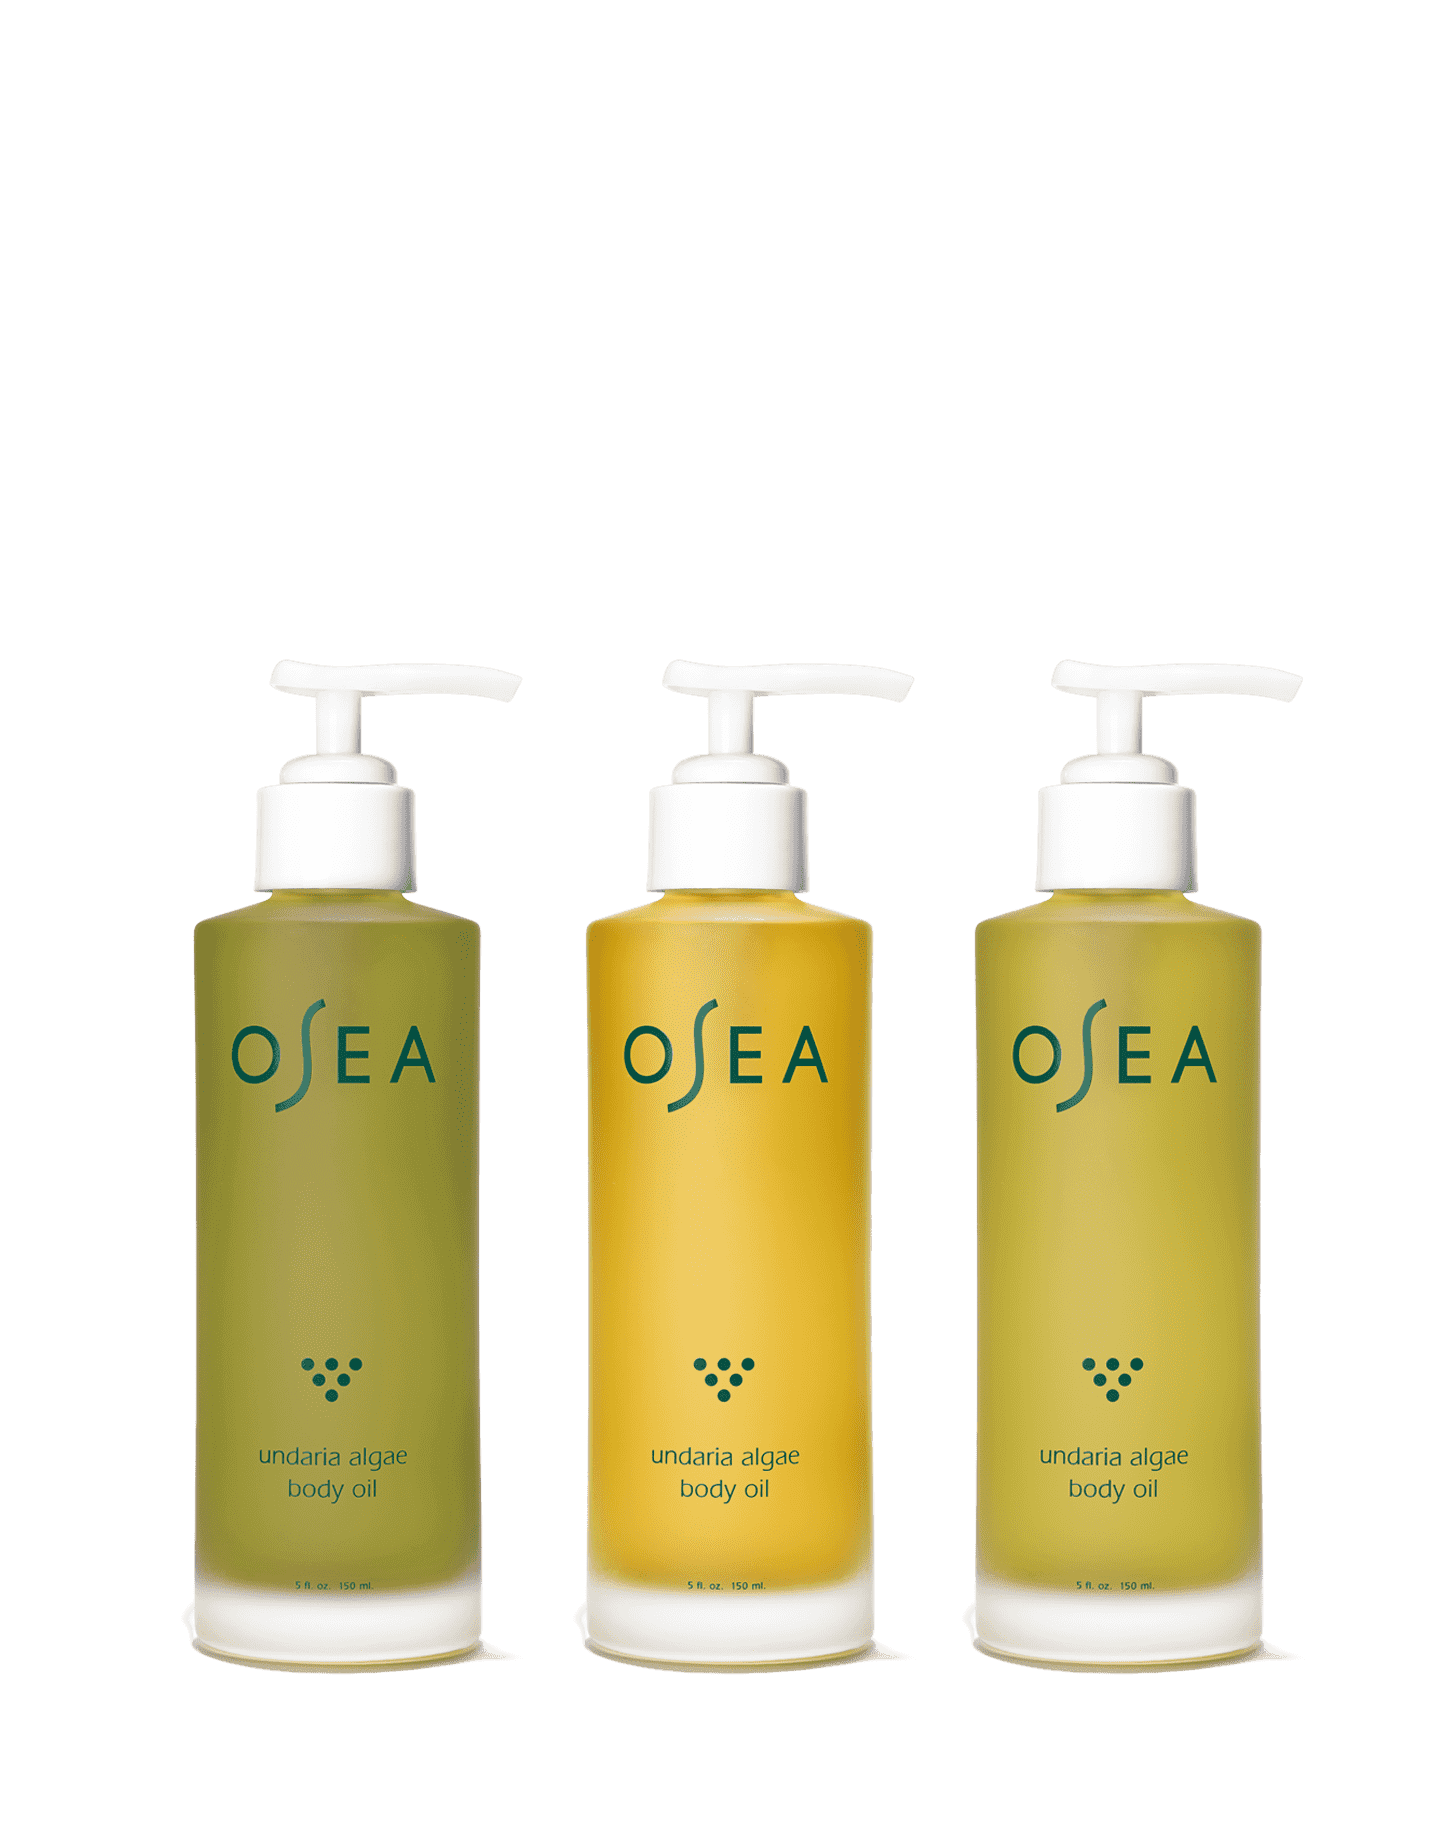 osea / undaria algae body oil